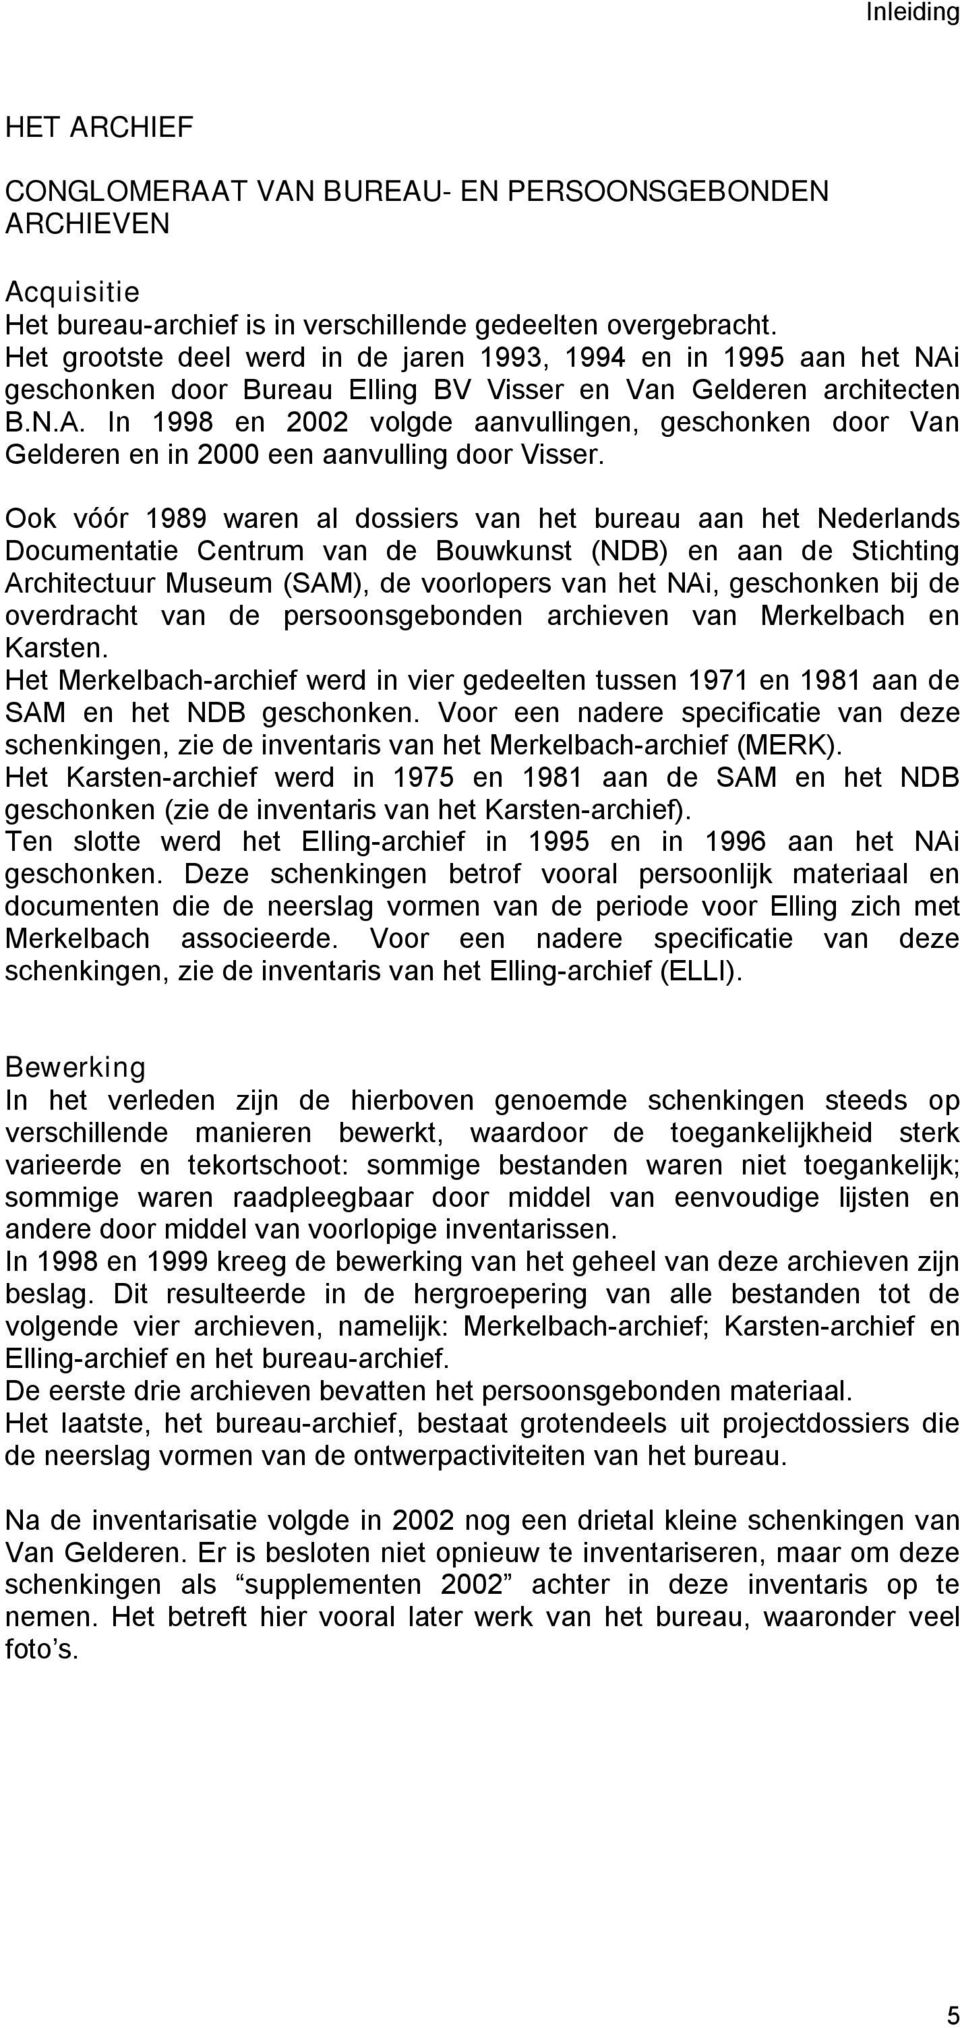 Ook vóór 1989 waren al dossiers van het bureau aan het Nederlands Documentatie Centrum van de Bouwkunst (NDB) en aan de Stichting Architectuur Museum (SAM), de voorlopers van het NAi, geschonken bij